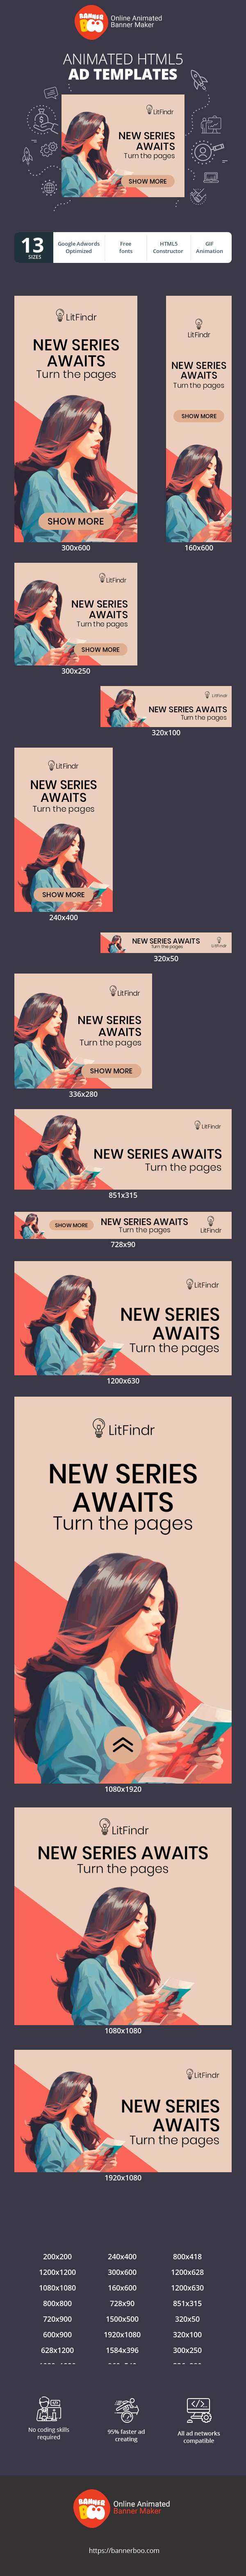 Шаблон рекламного банера — New Series Awaits — Turn The Pages